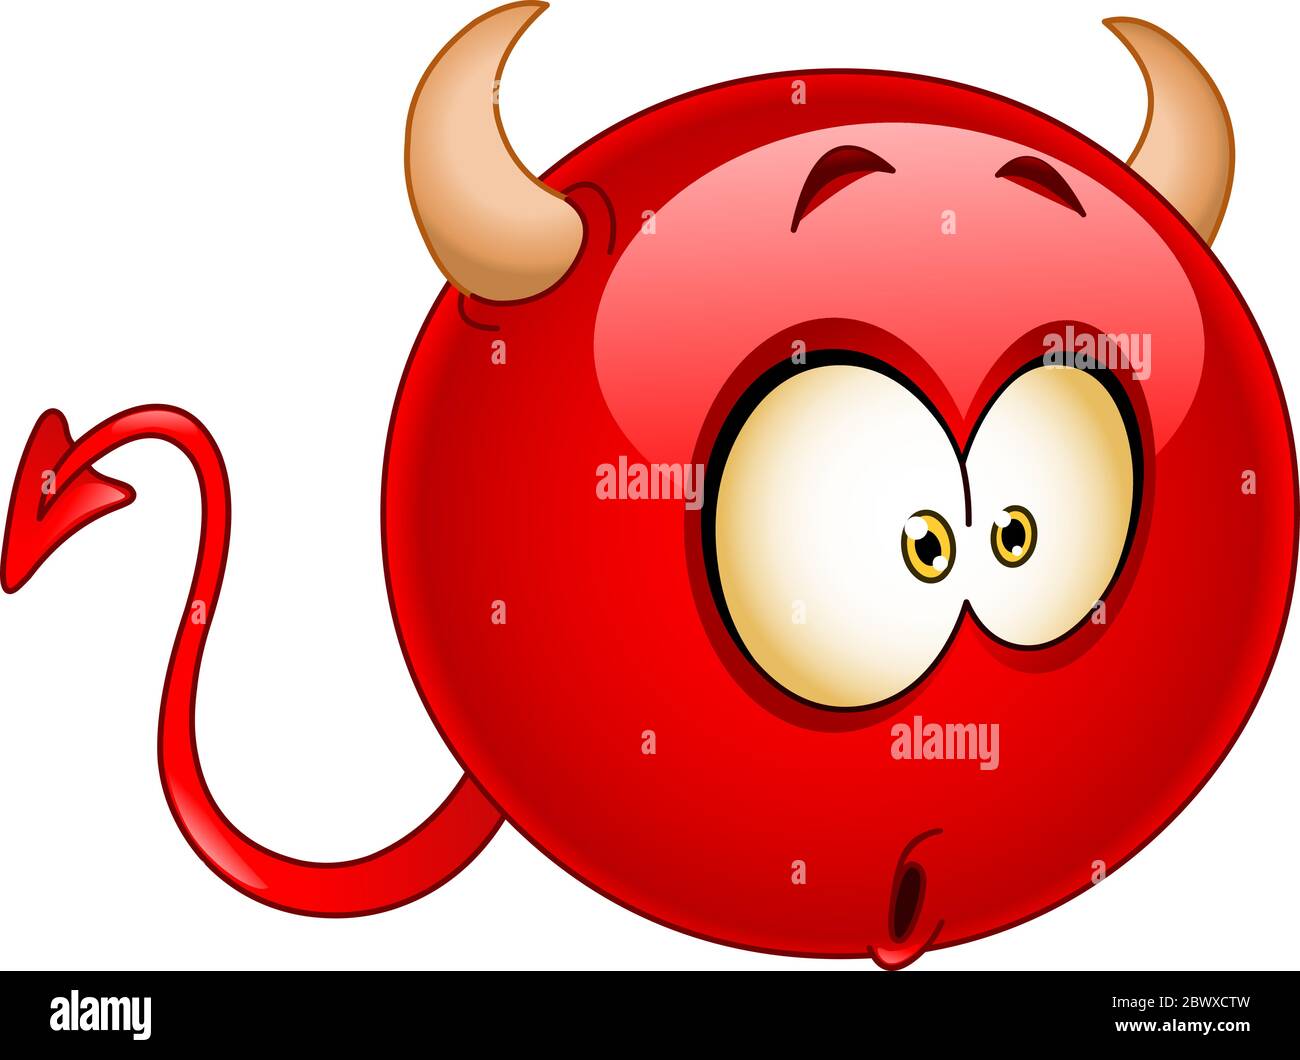 Émoticone diable rouge avec une expression surprise confuse et surprend sur son visage Illustration de Vecteur